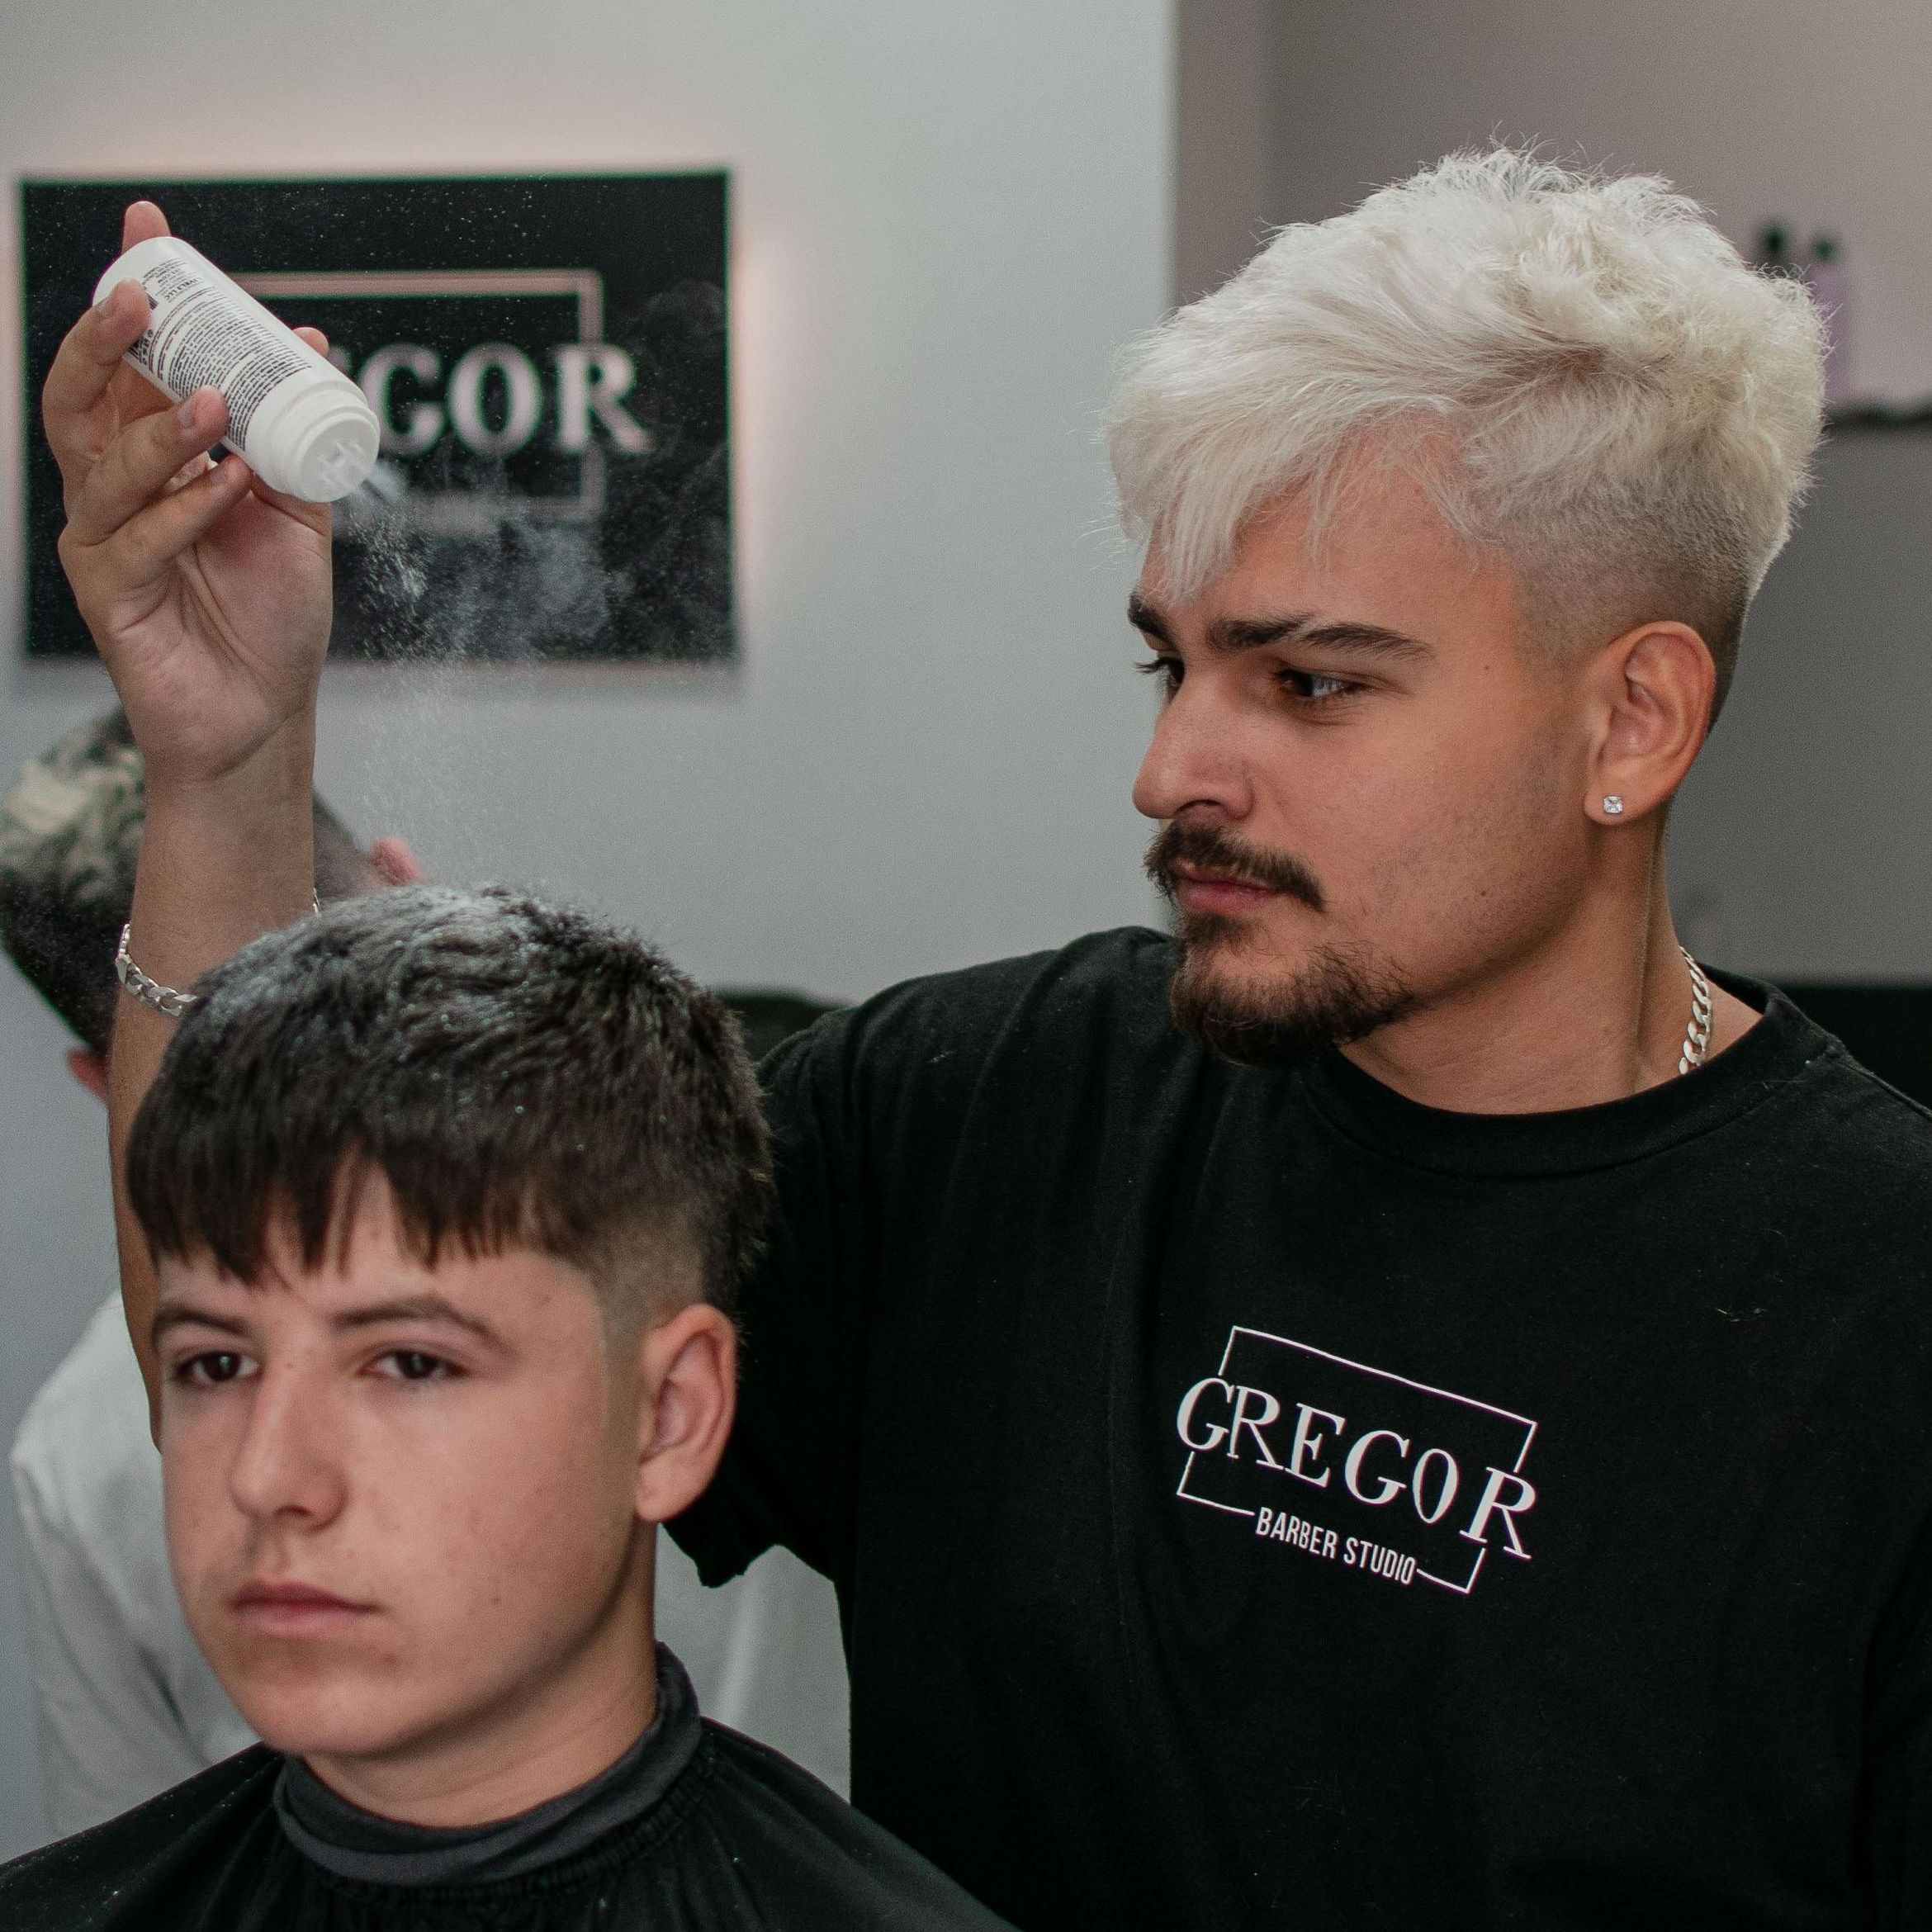 Gregor barber - Gregor barber studio